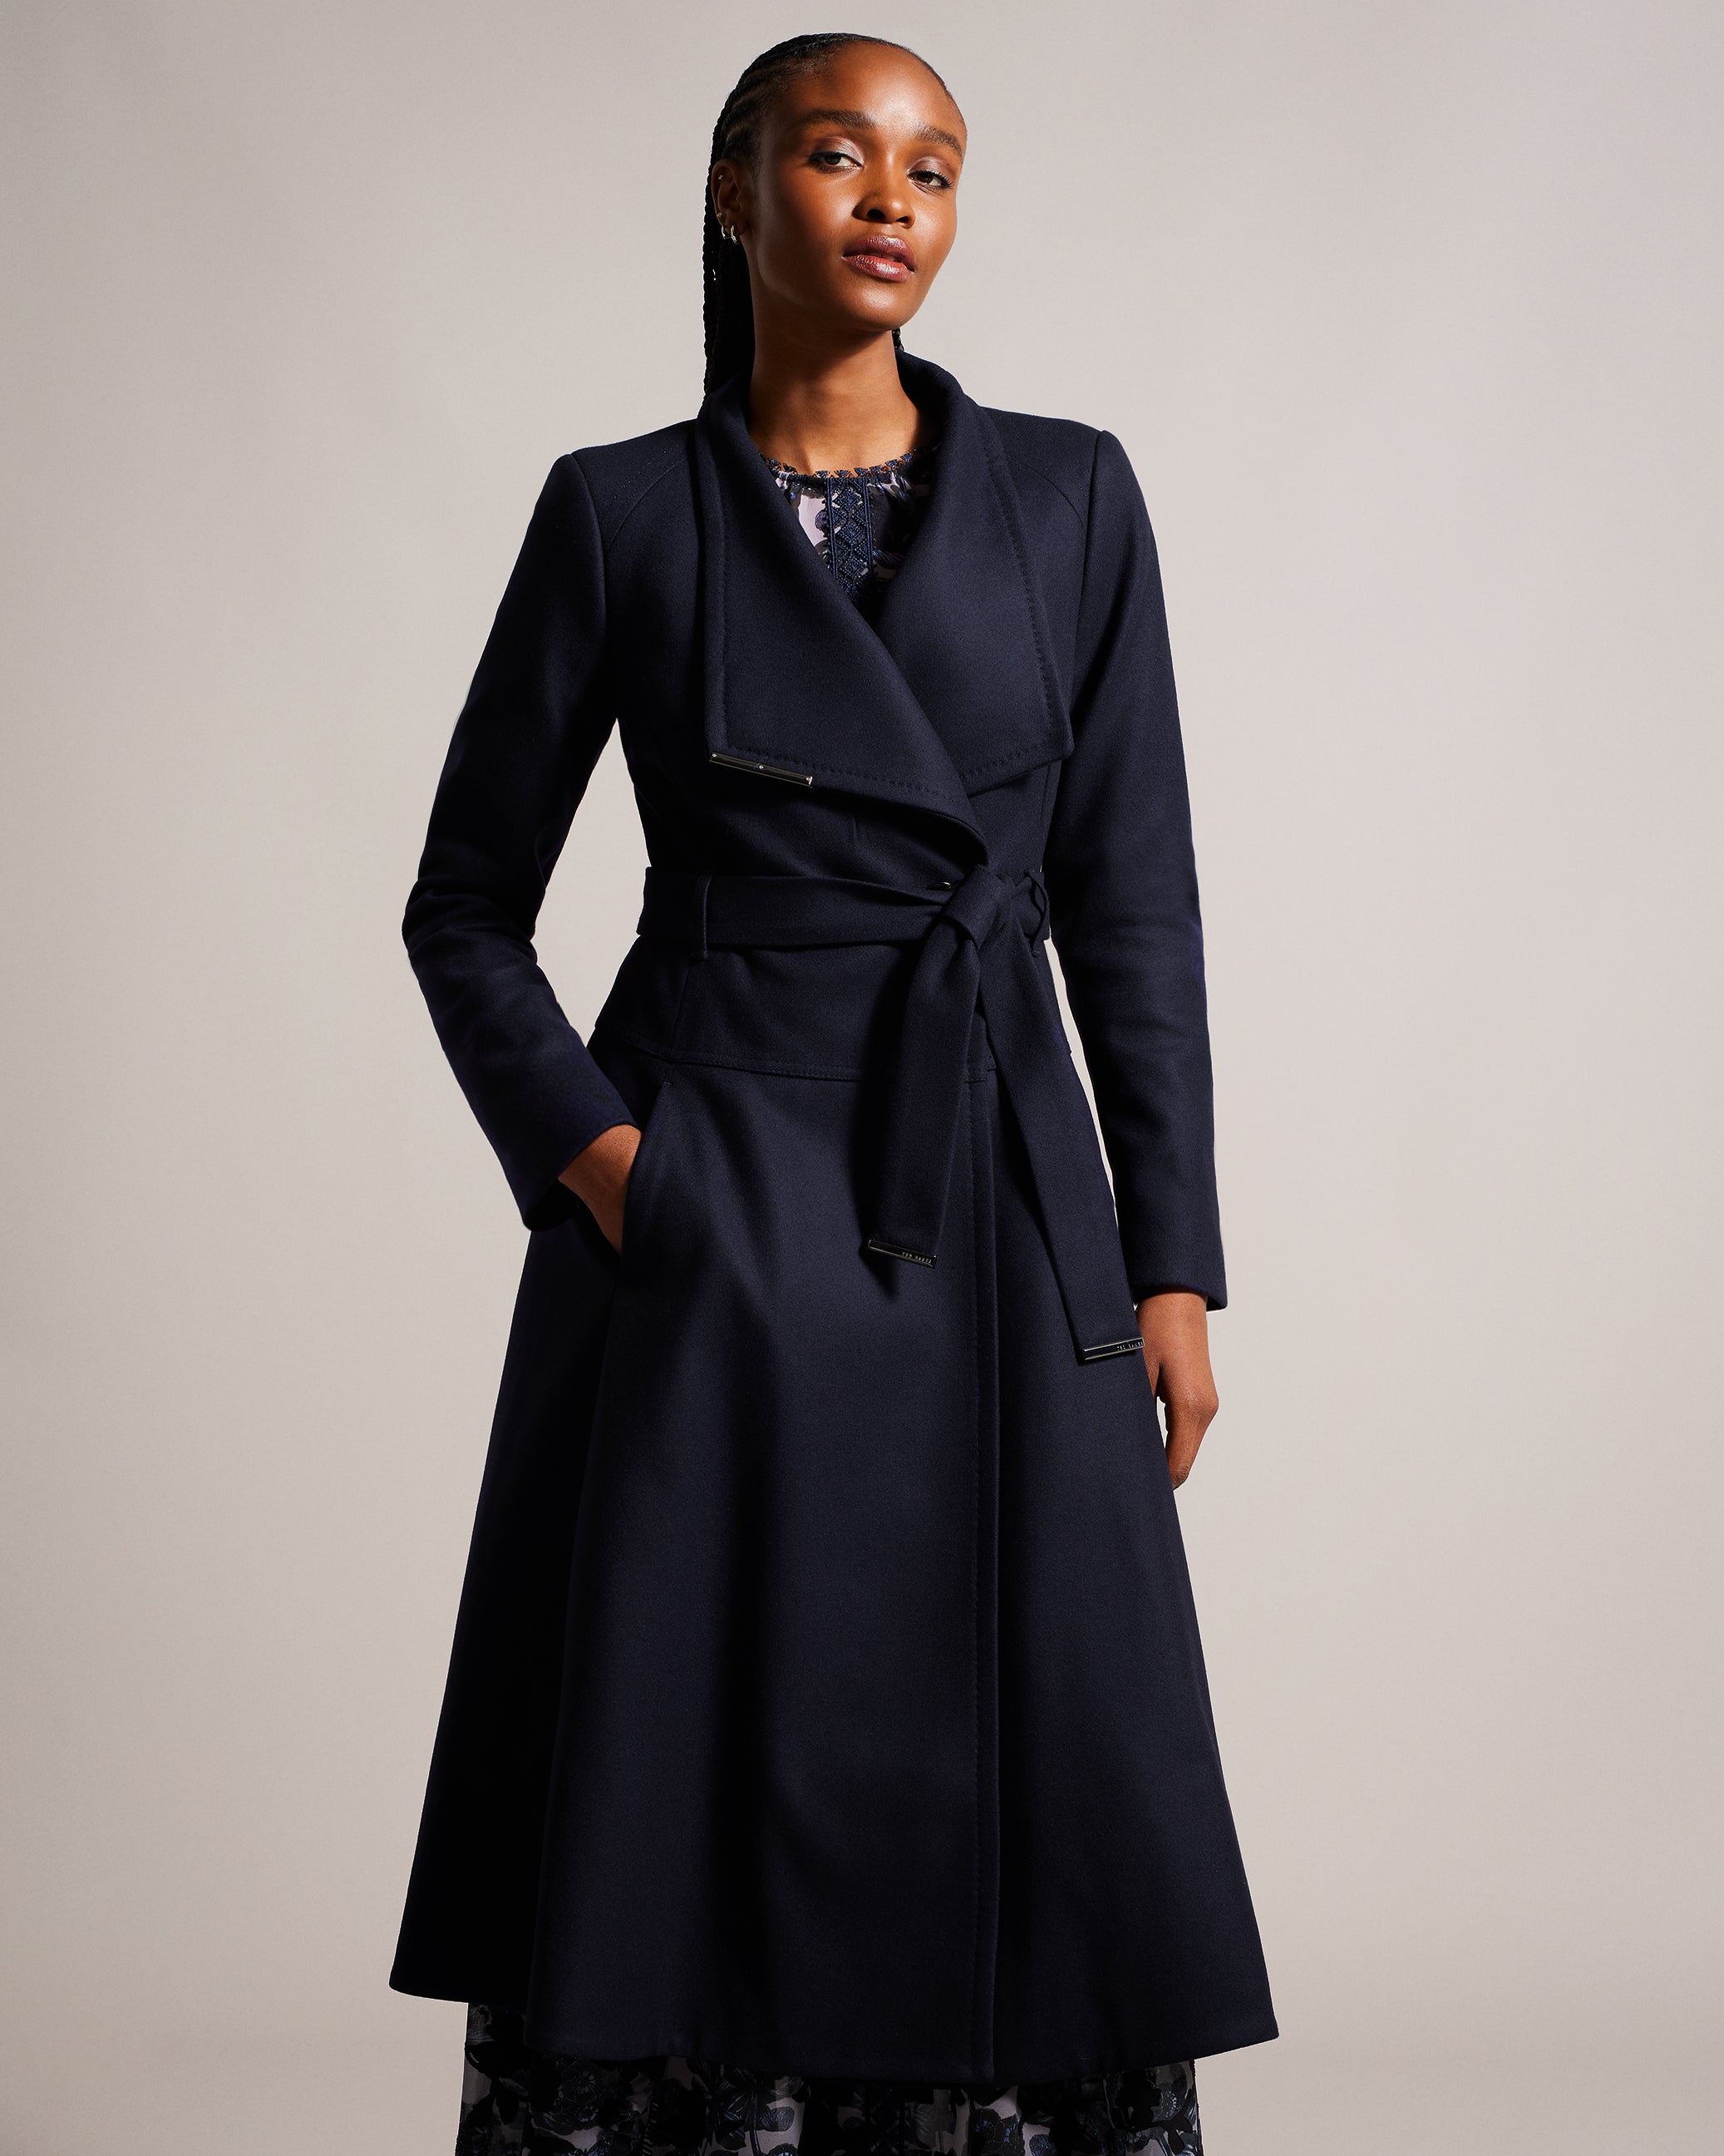 Liz Baker Essentials Wool Blend Overcoat Women's 10 Gray Grey Solid Winter  Wear